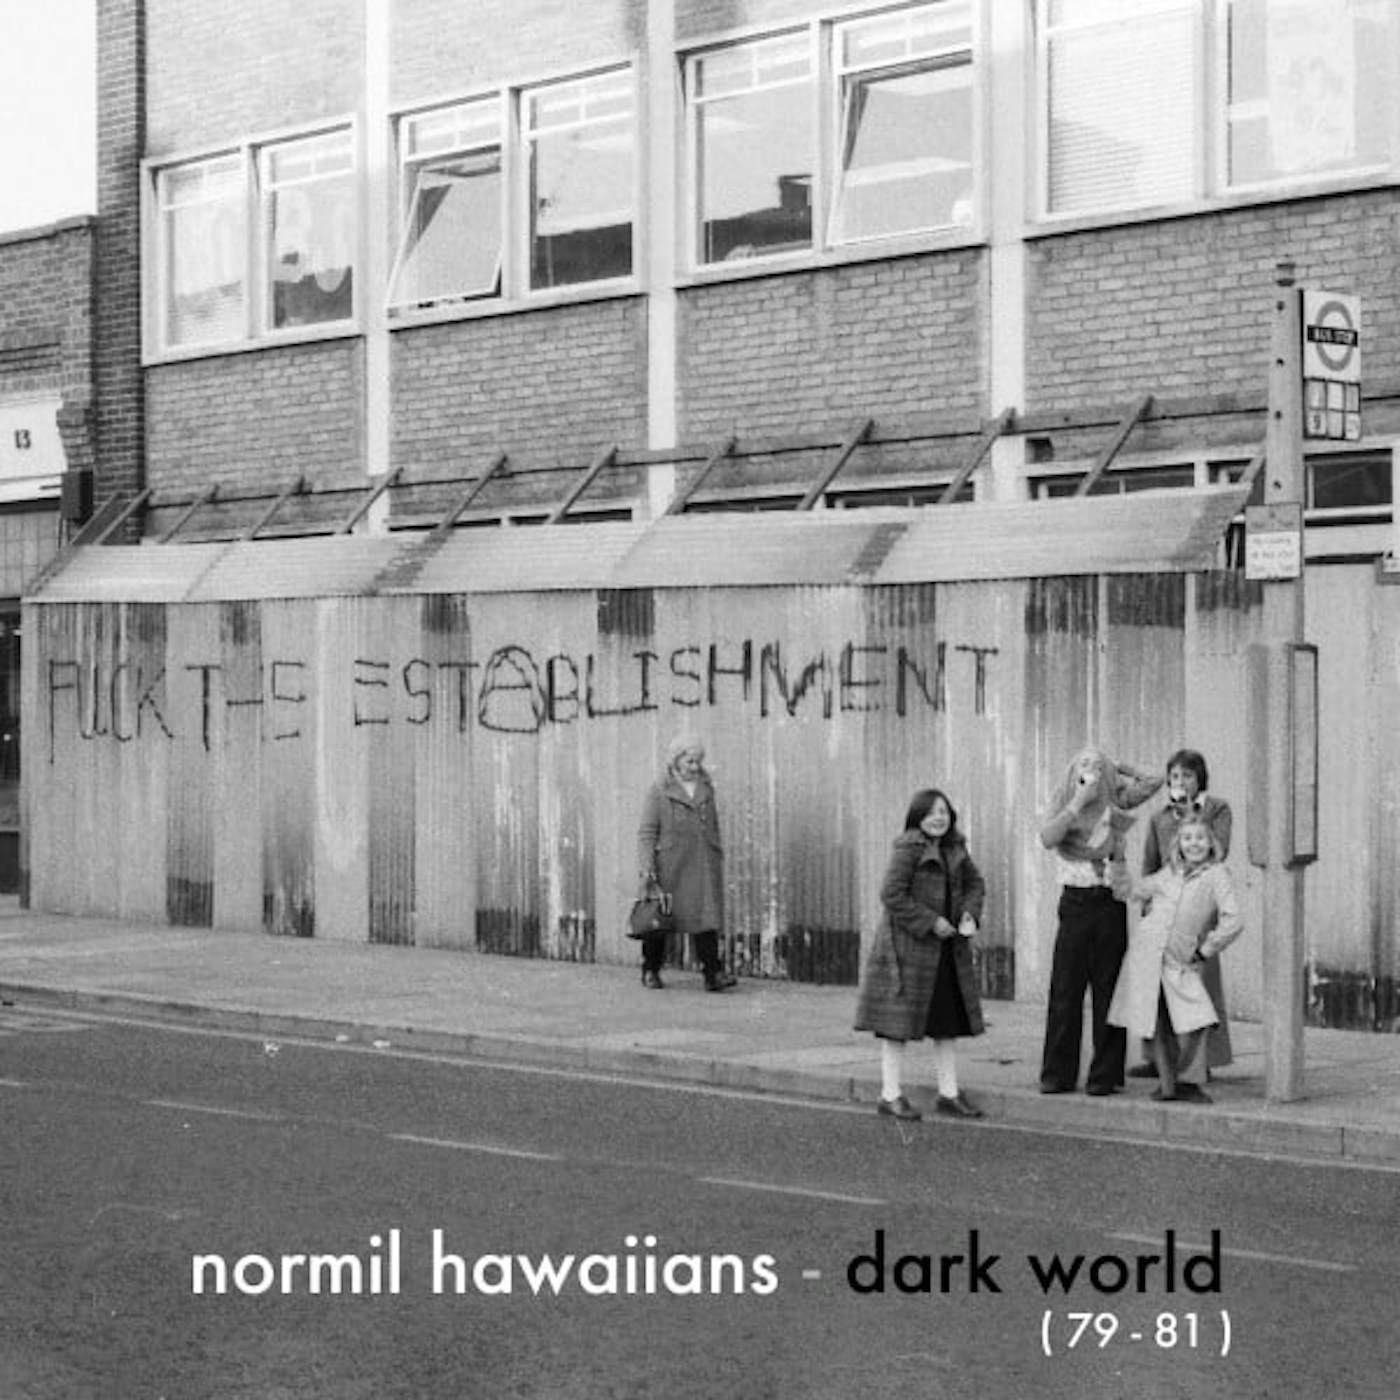 Normil Hawaiians Dark World (79-81) Vinyl Record